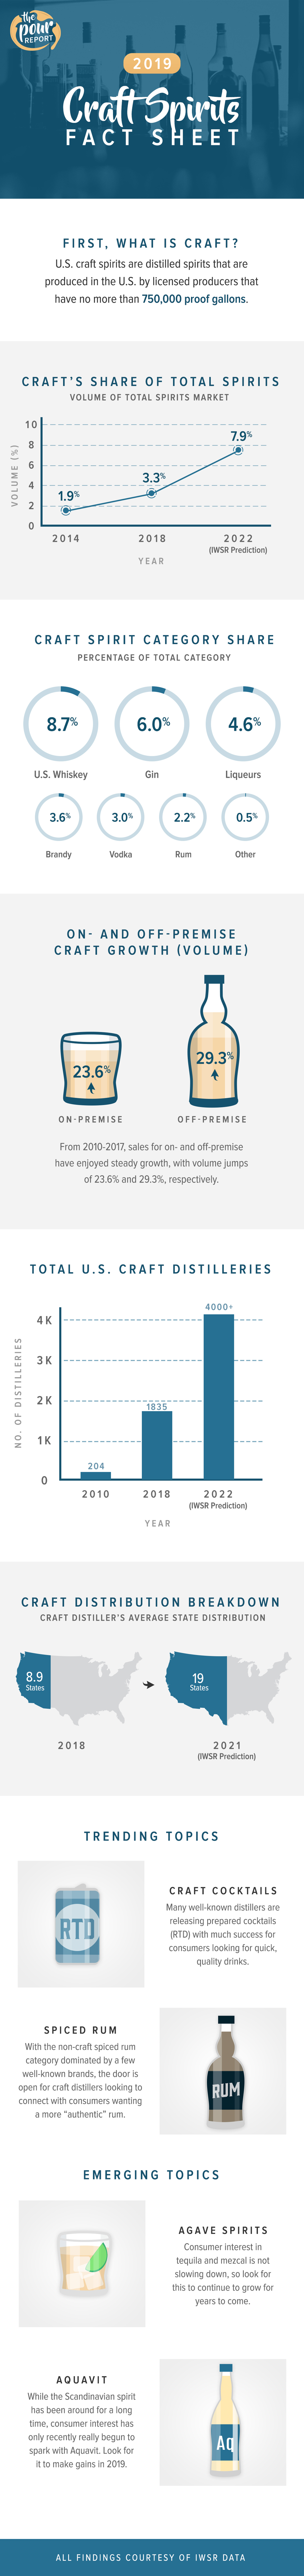 2019 craft spirits fact sheet infographic